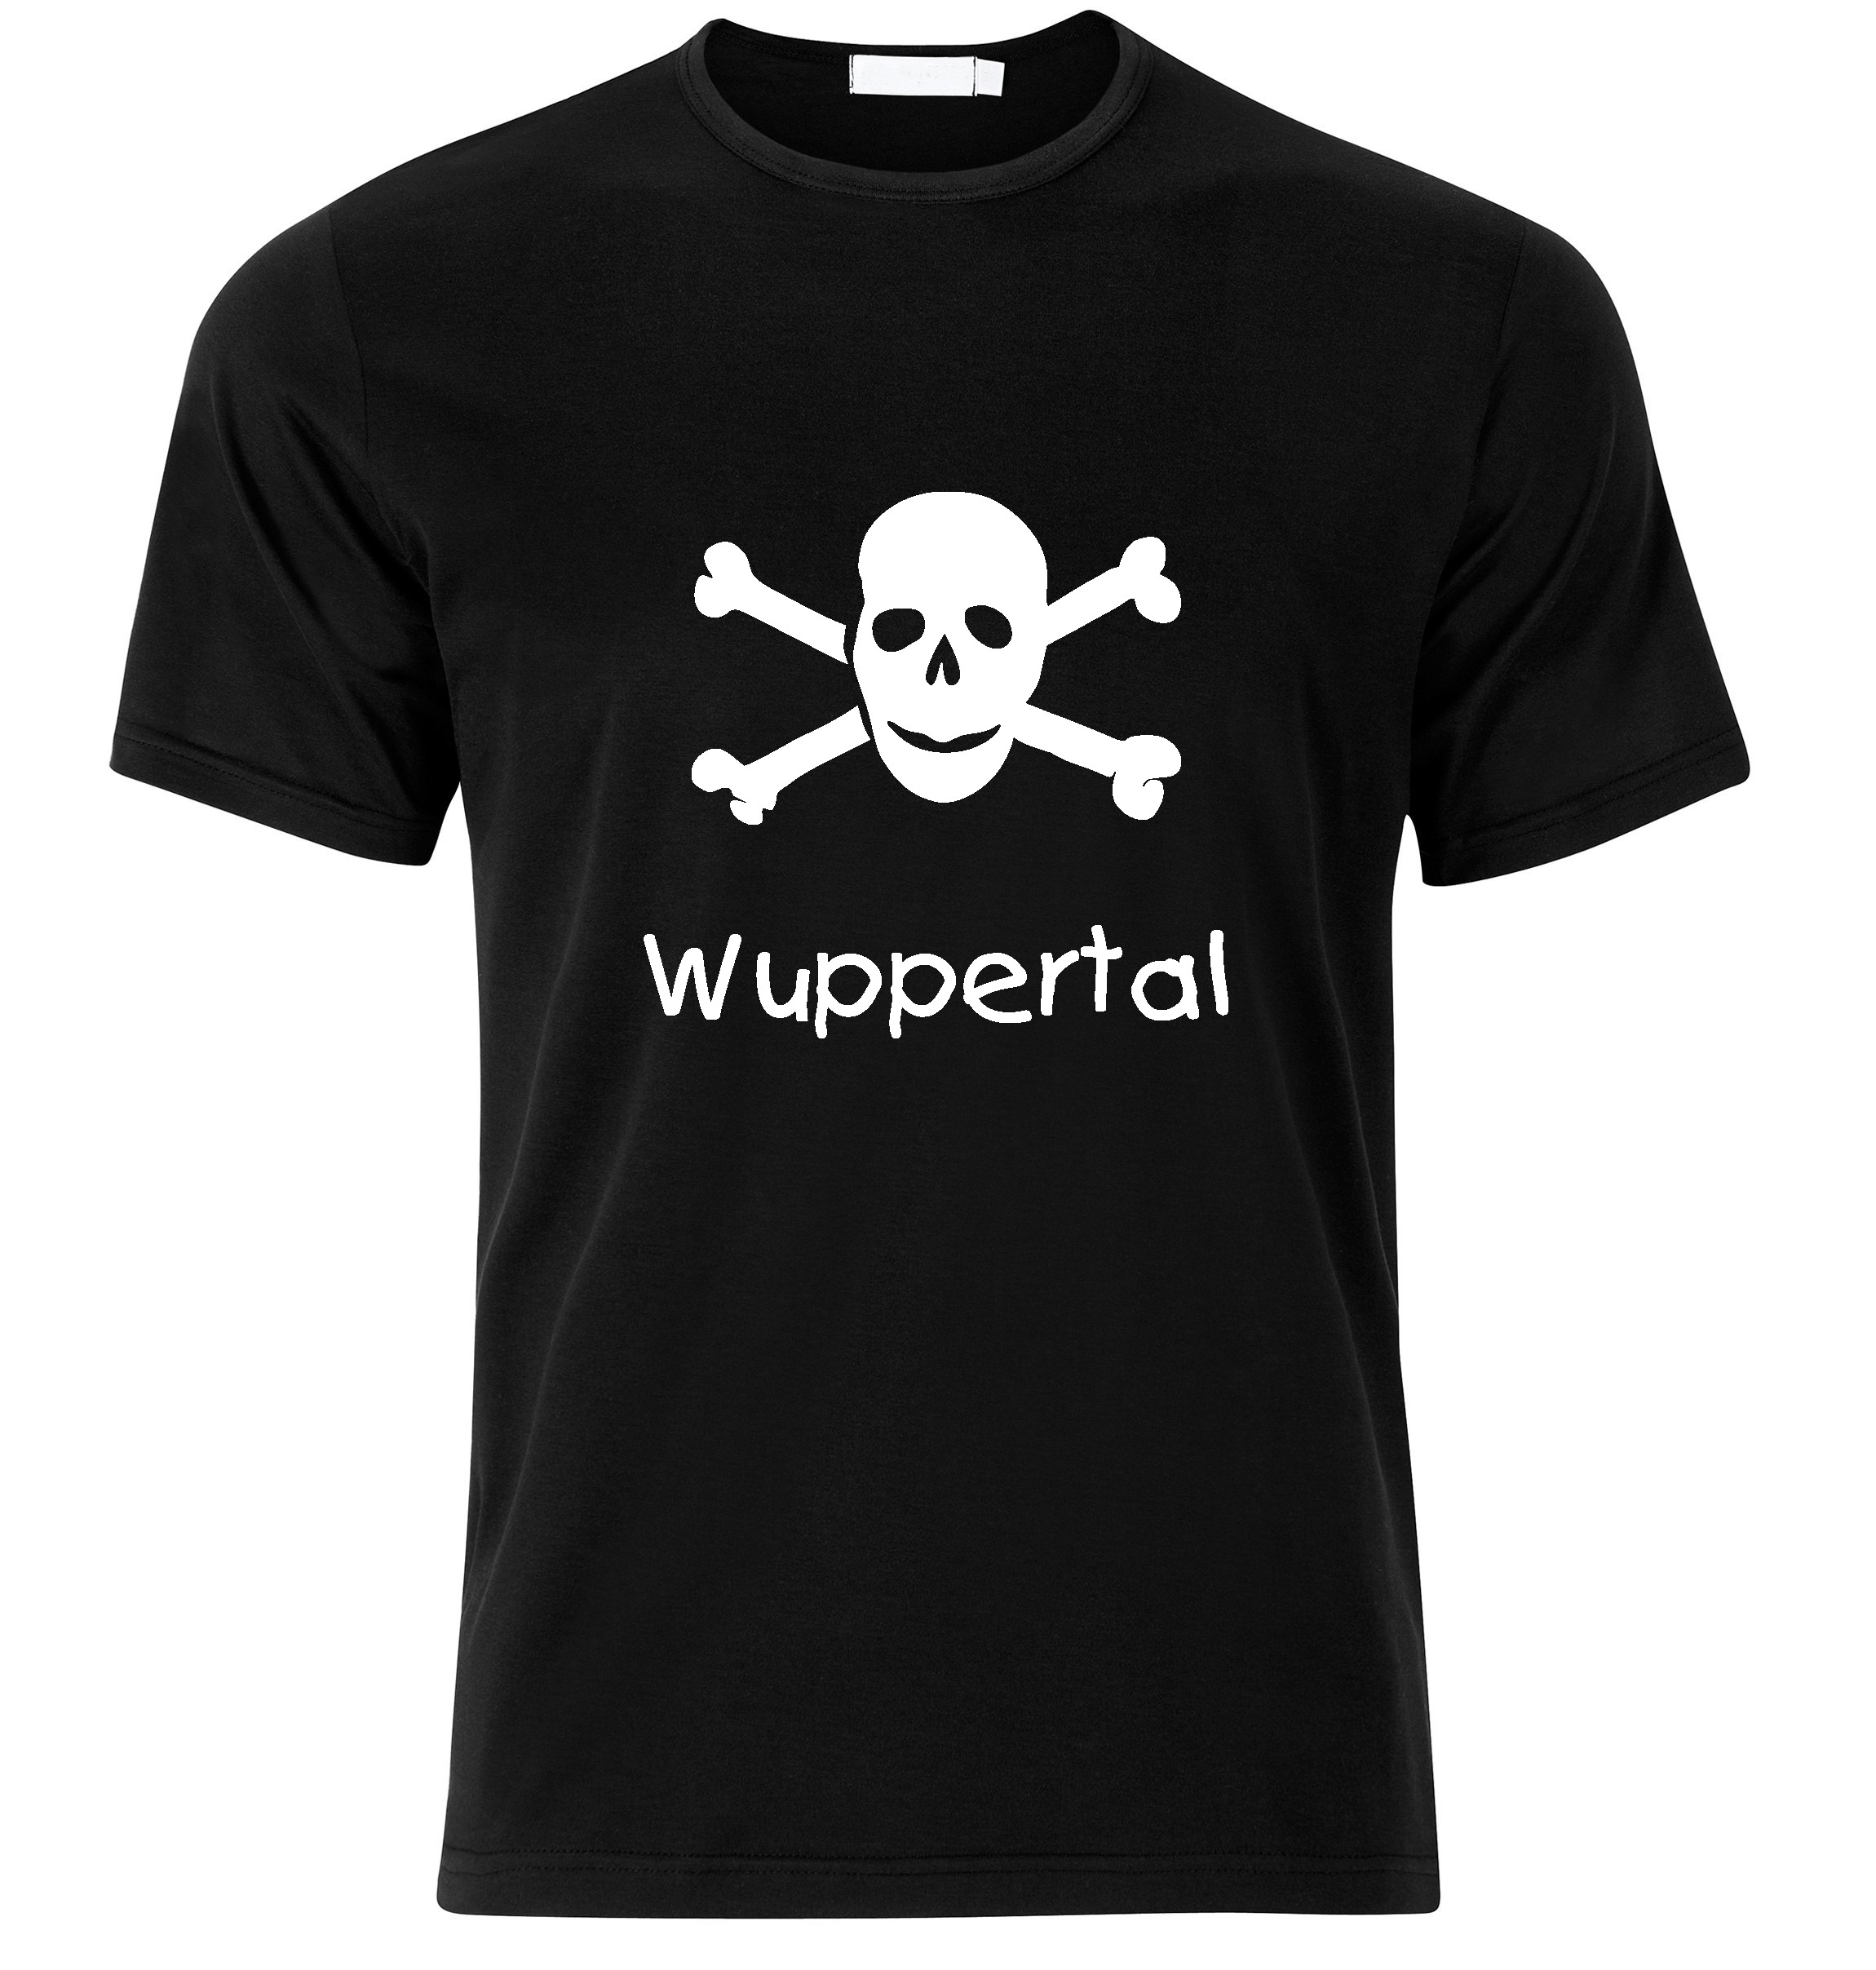 T-Shirt Wuppertal Jolly Roger, Totenkopf